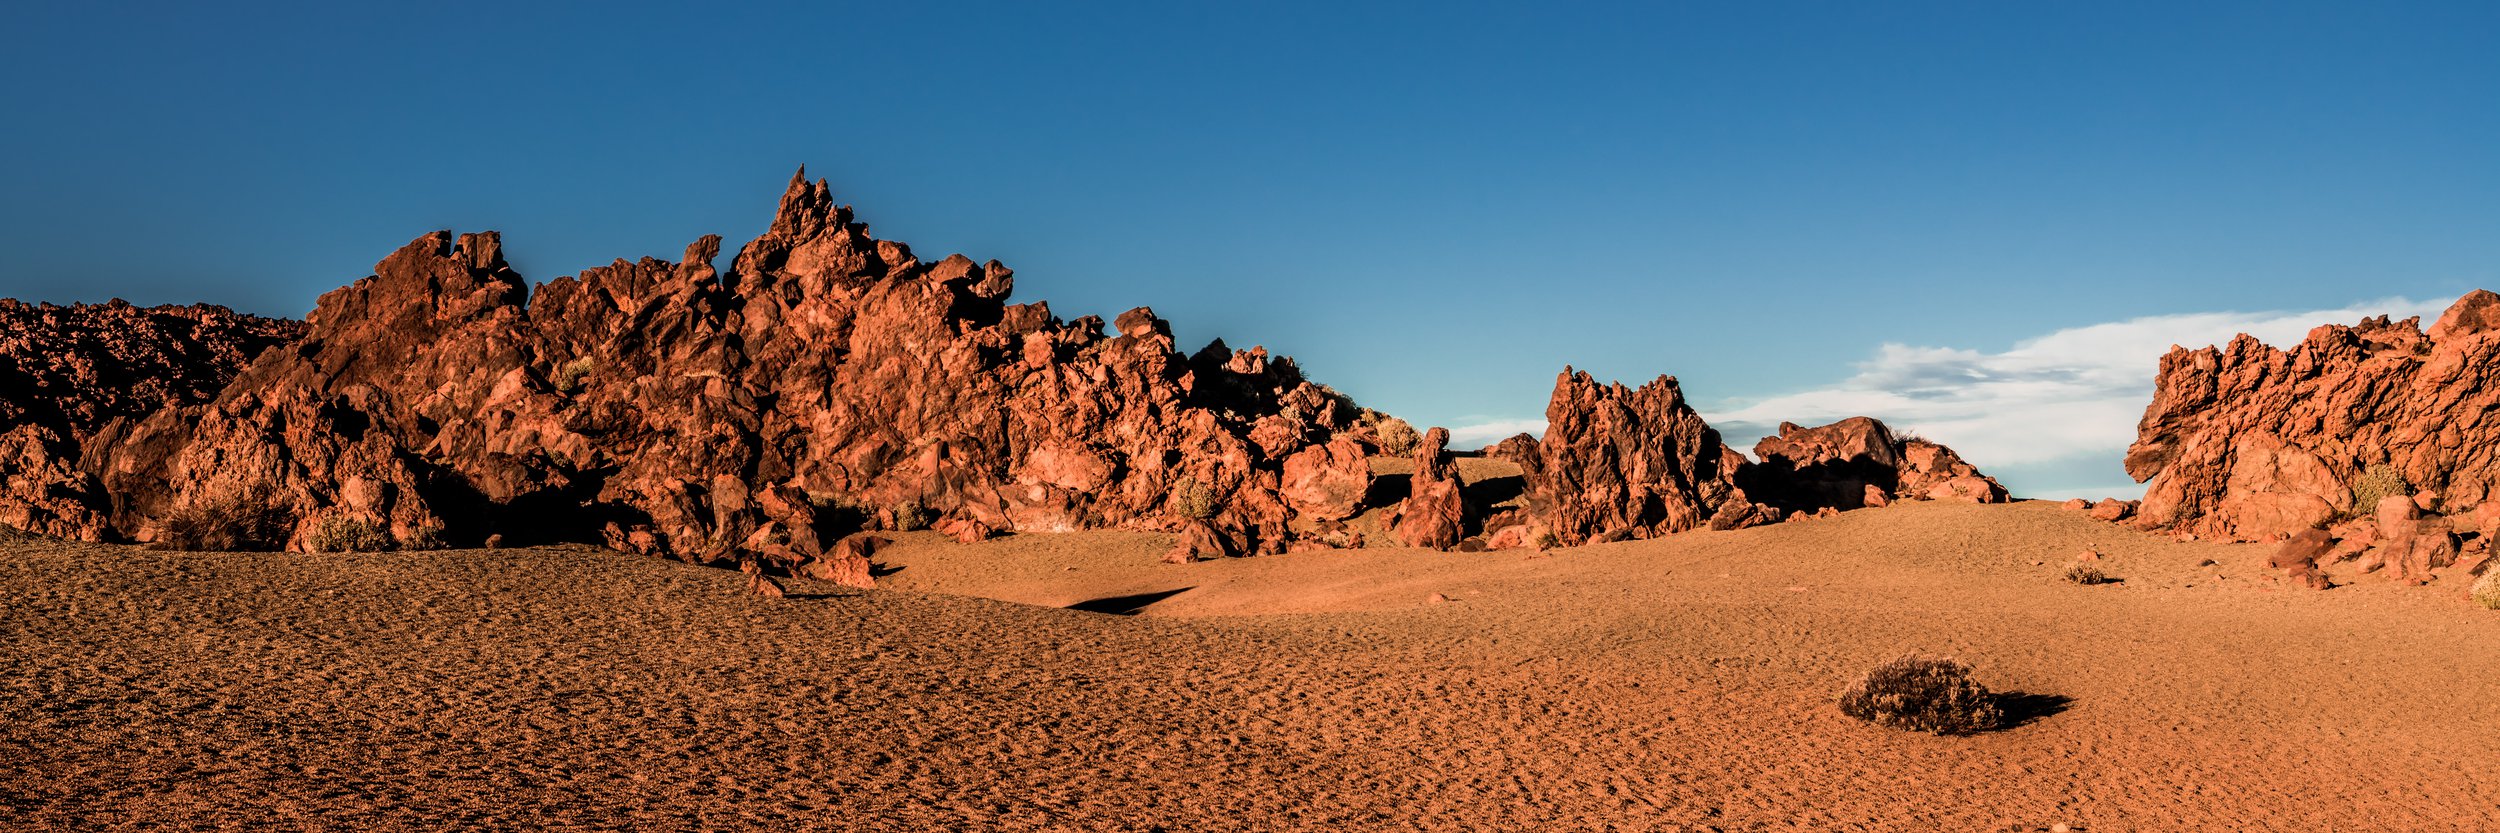 Закат в каменистой пустыне